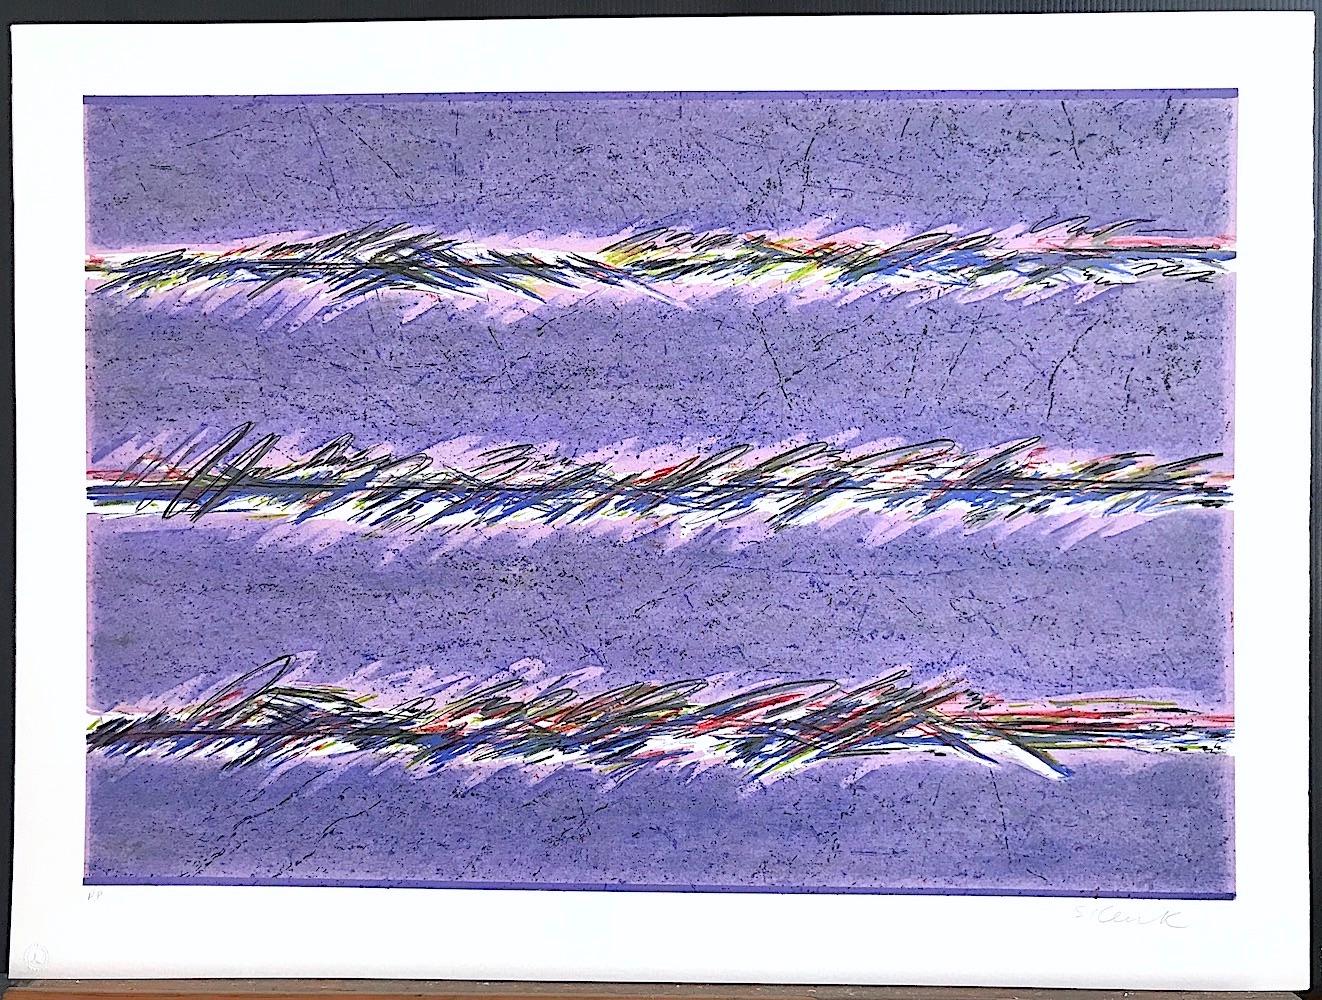 DREAMFIELDS II ist eine handgezeichnete Originallithografie der Künstlerin Sybil Kleinrock (Ehefrau des bekannten Schmuckdesigners David Yurman). Es wurde in sieben Farben unter Verwendung traditioneller Handlithografietechniken auf archivfähigem